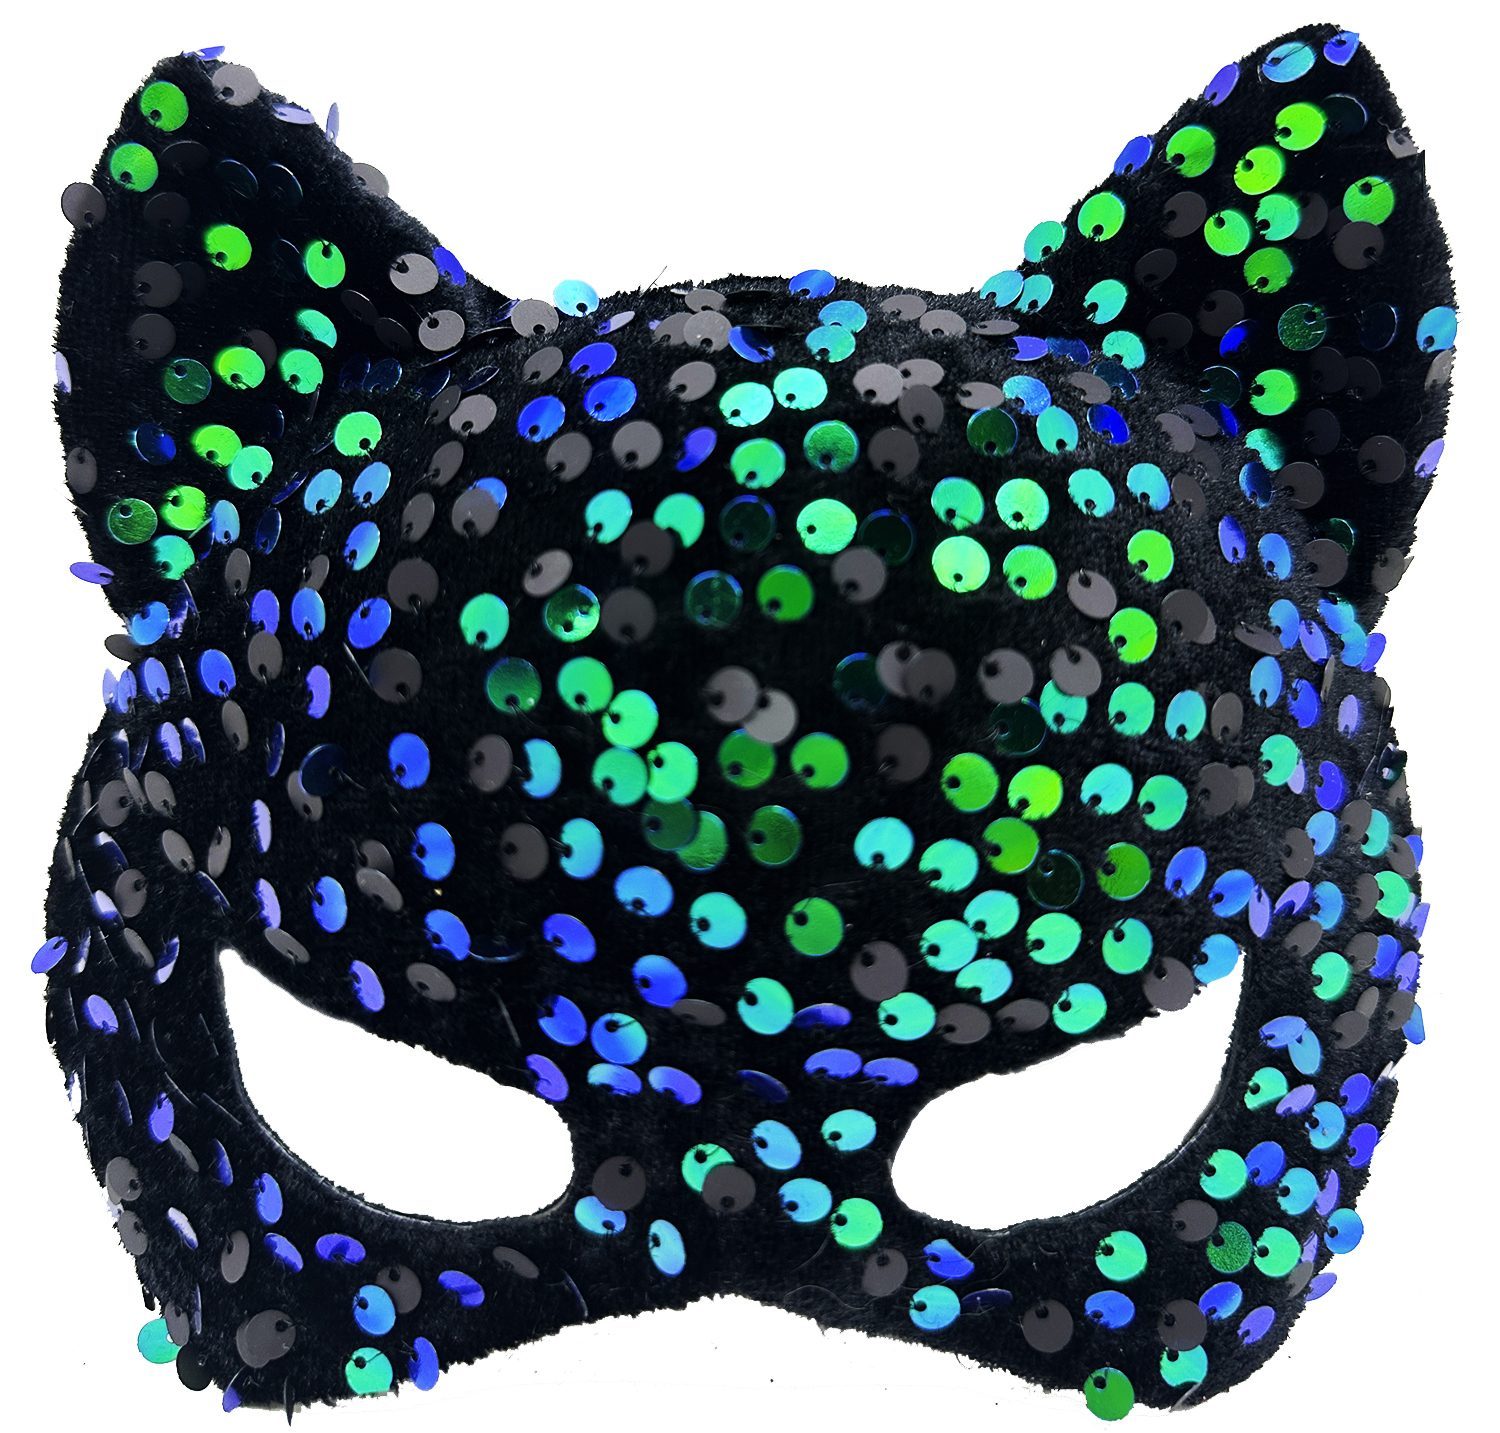 Siyah Kadife Kumaş Üzerine Mavi Yeşil Payetli Pullu Parti Maskesi 16x14 cm (Lisinya)